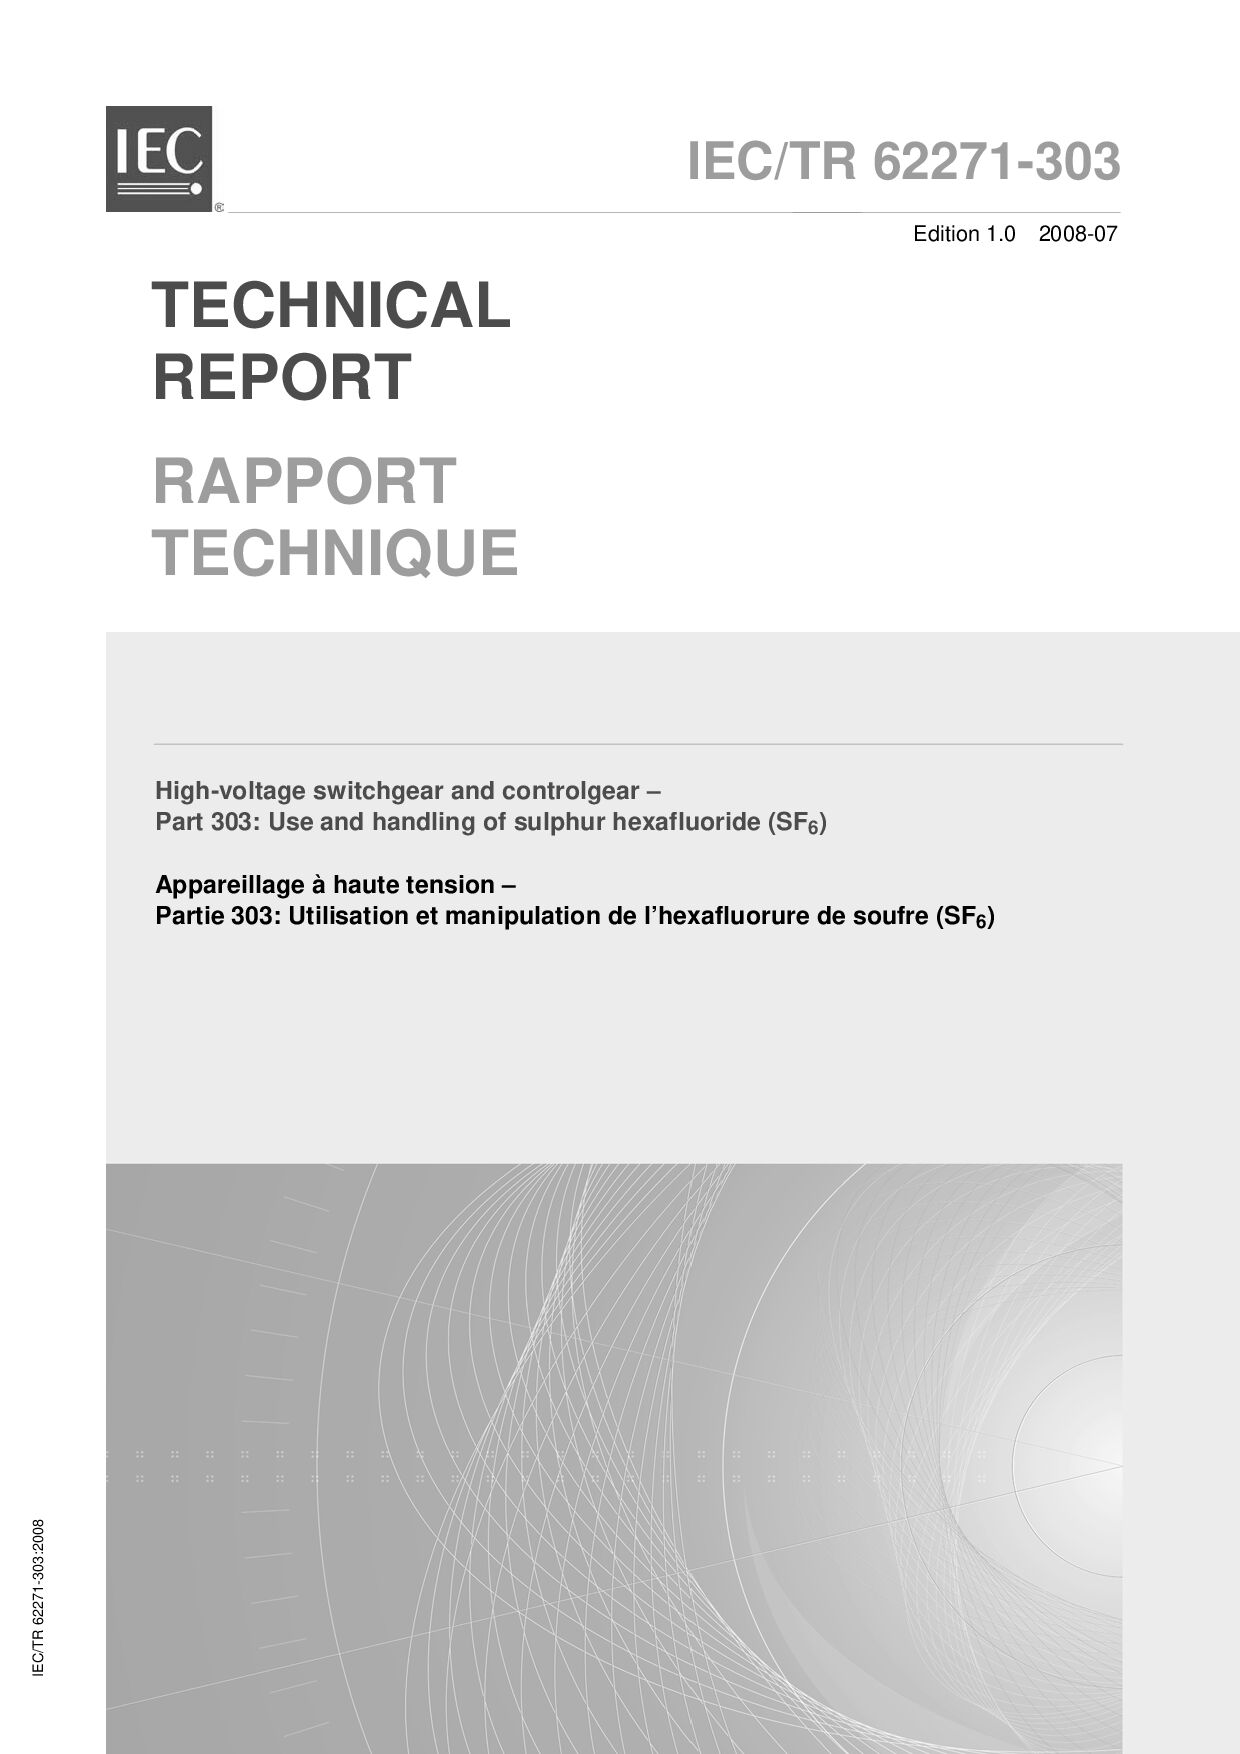 IEC TR 62271-303:2008